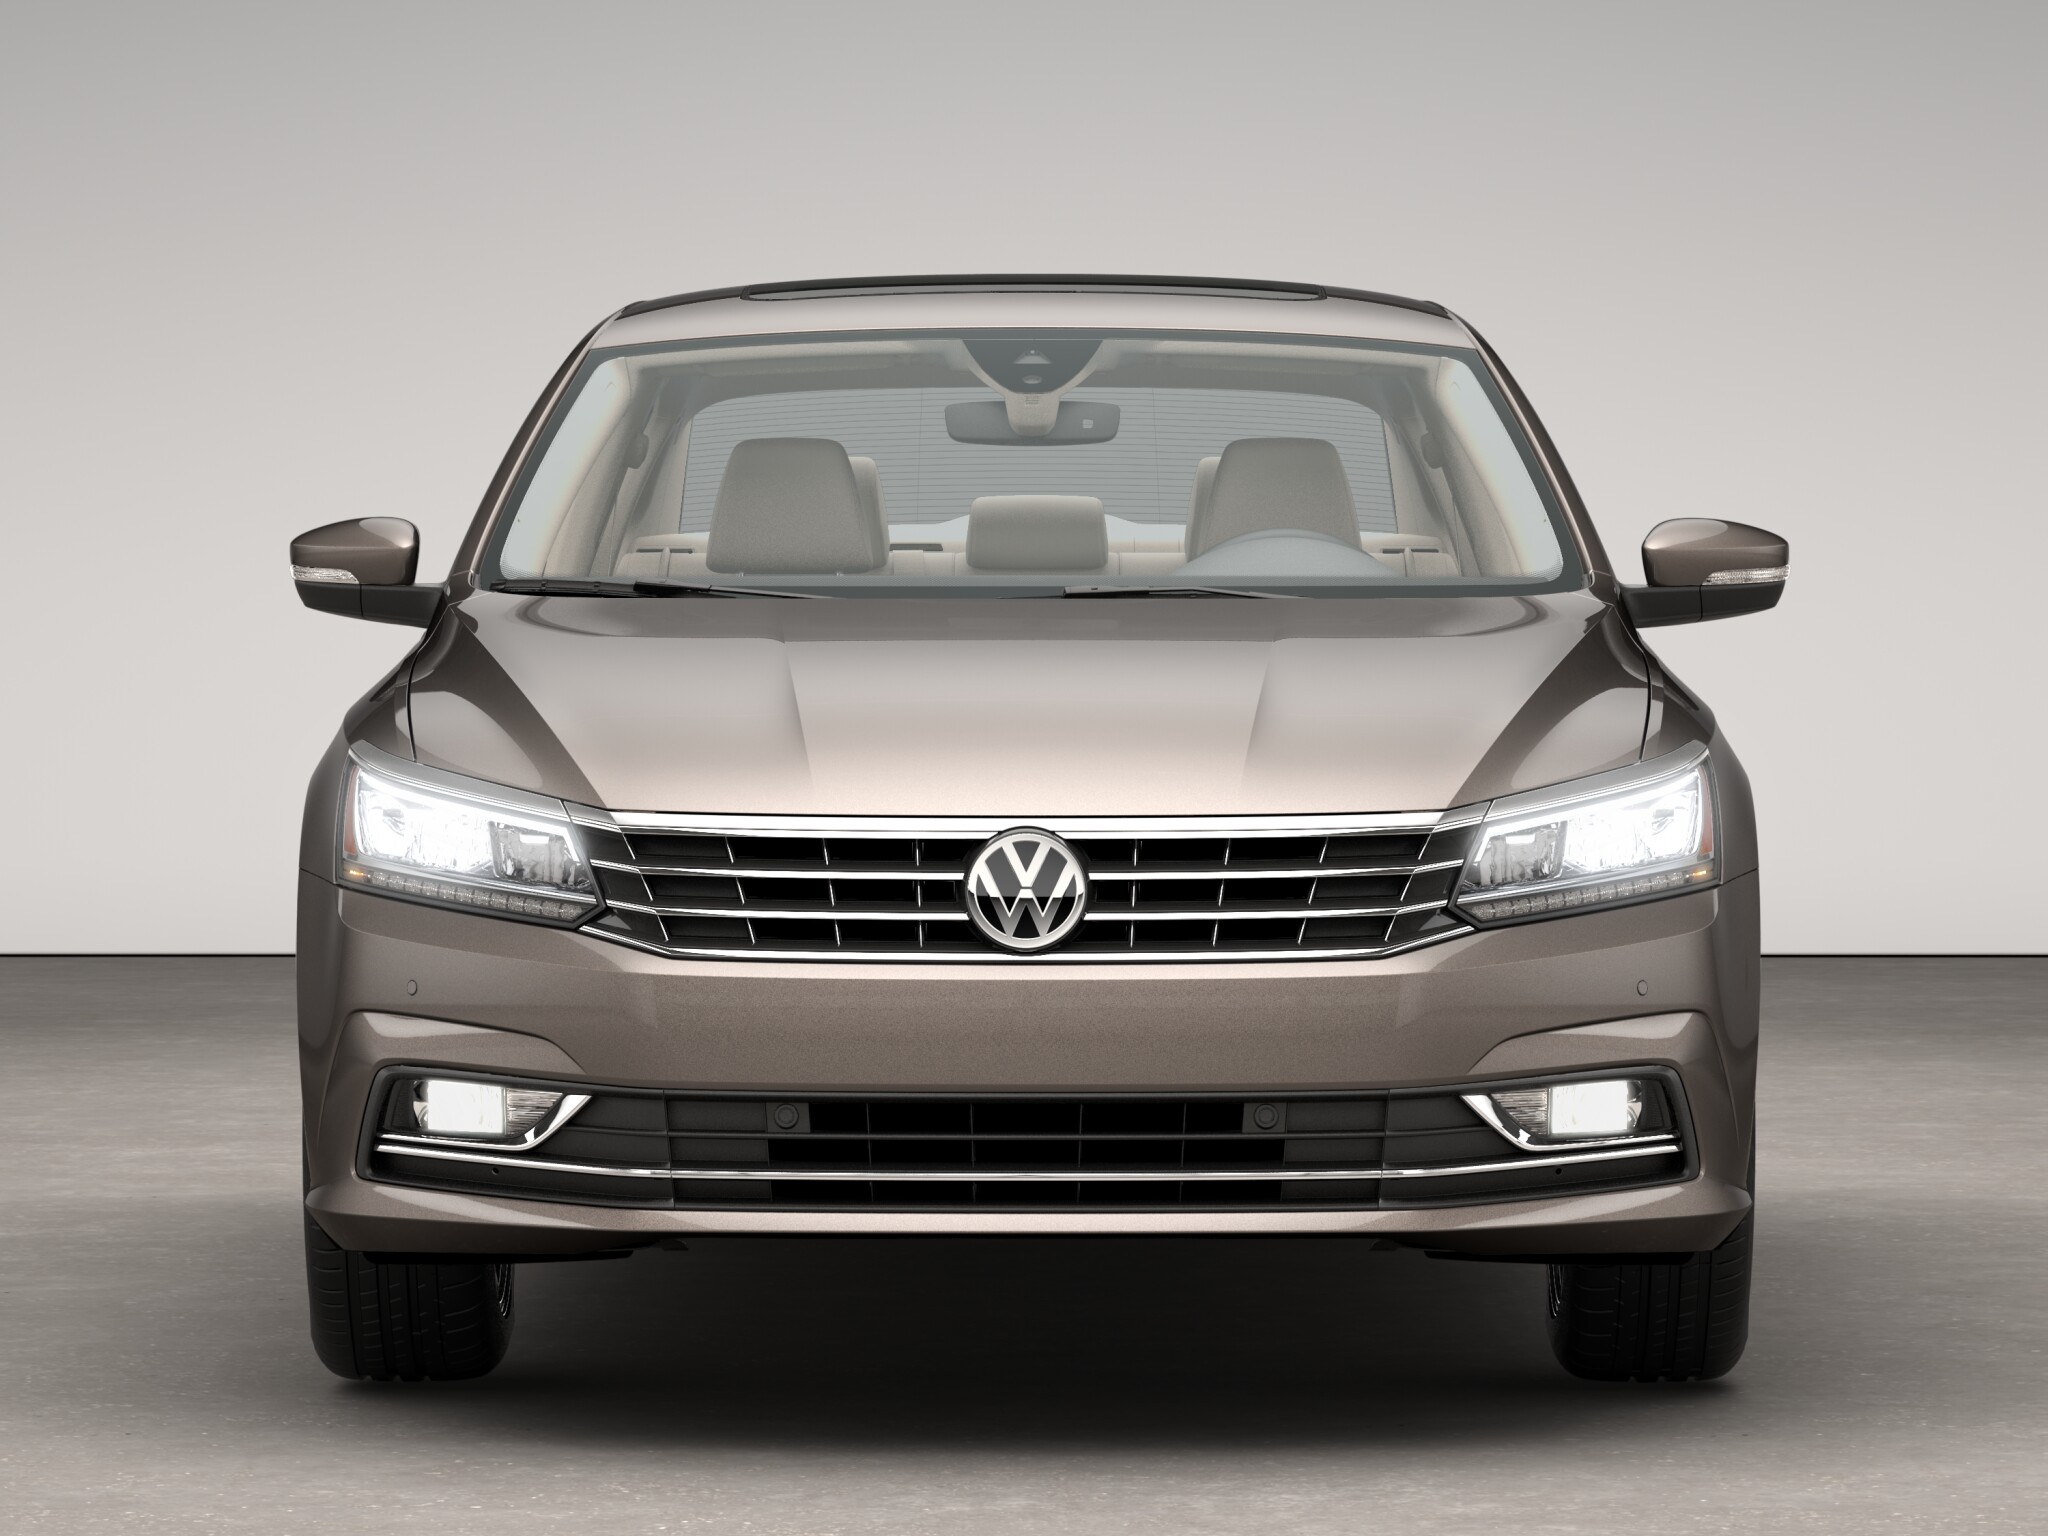 Volkswagen Passat V6 SEL Premium front view